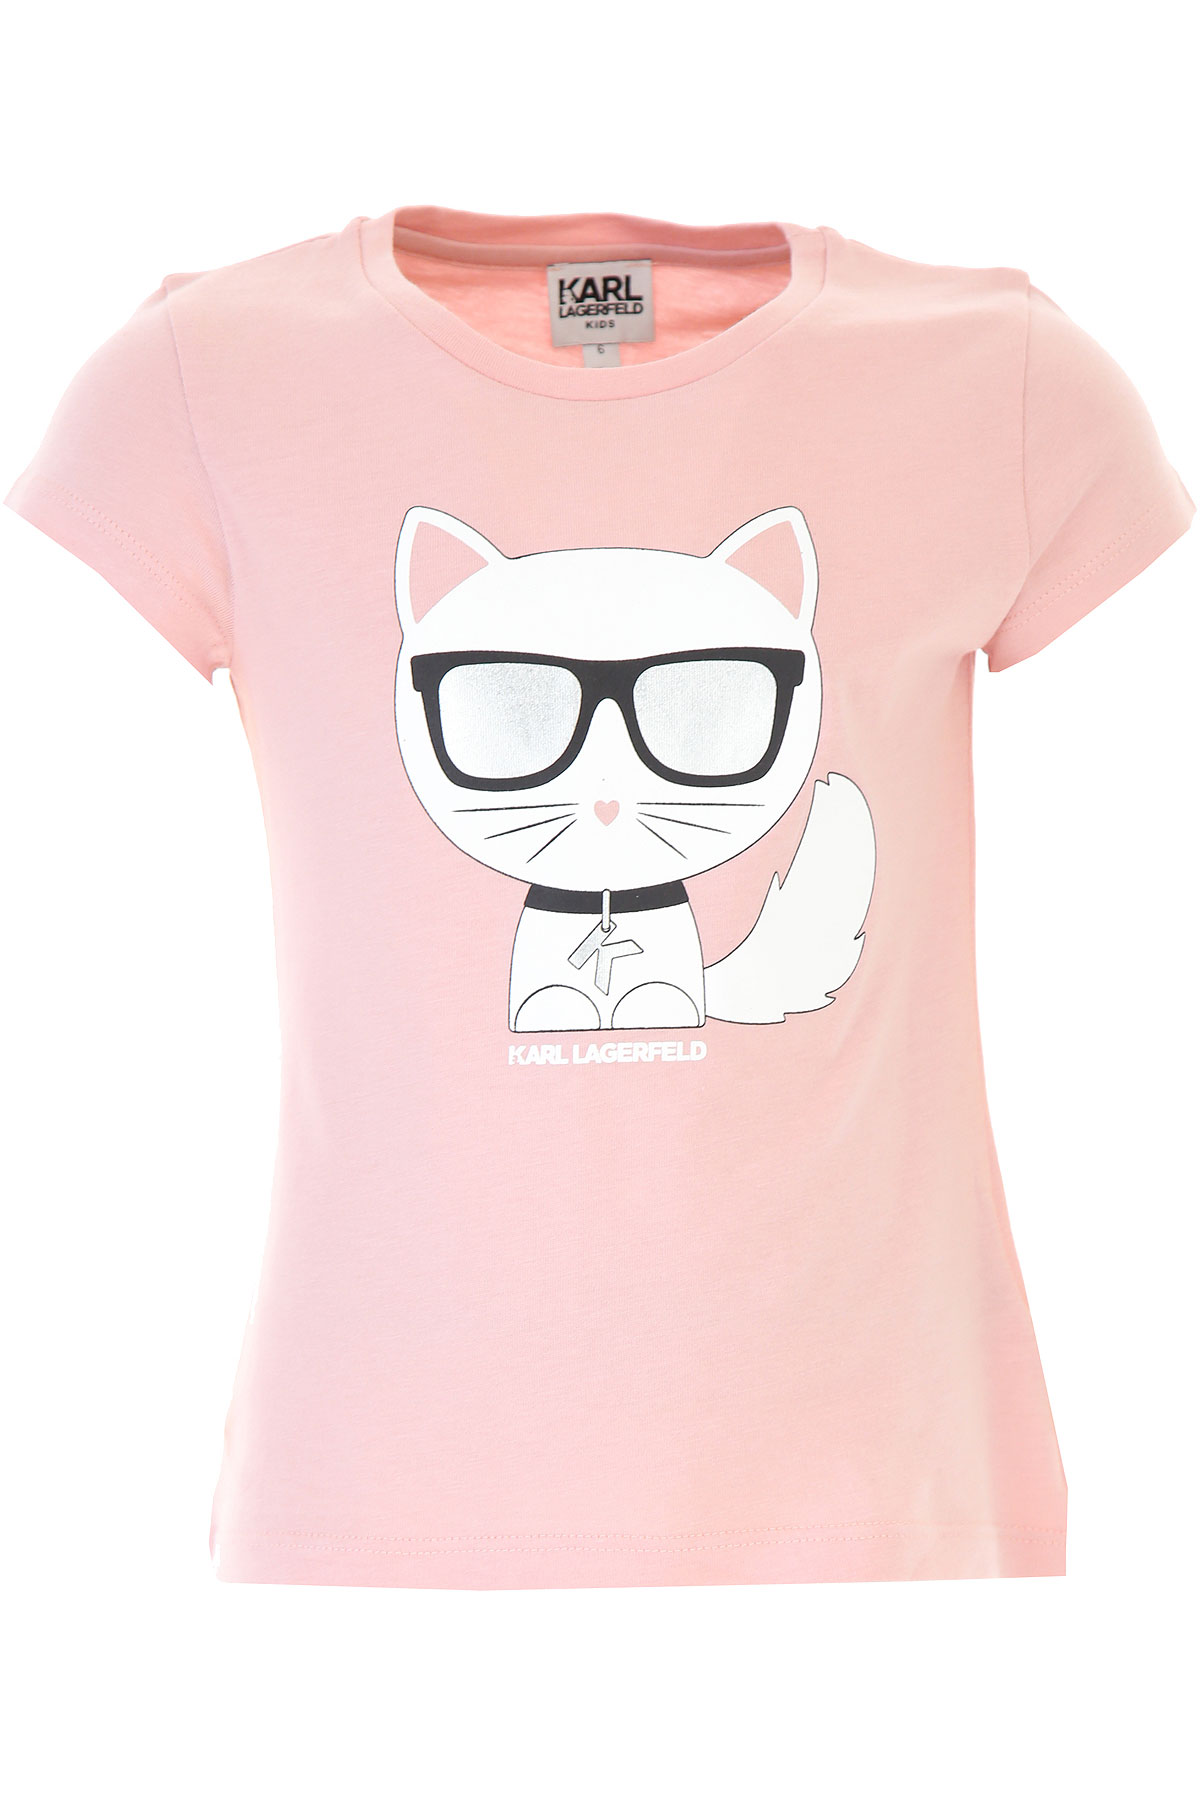 Karl Lagerfeld Kinder T-Shirt für Mädchen Günstig im Sale, Pink, Baumwolle, 2017, 12Y 4Y 6Y 8Y